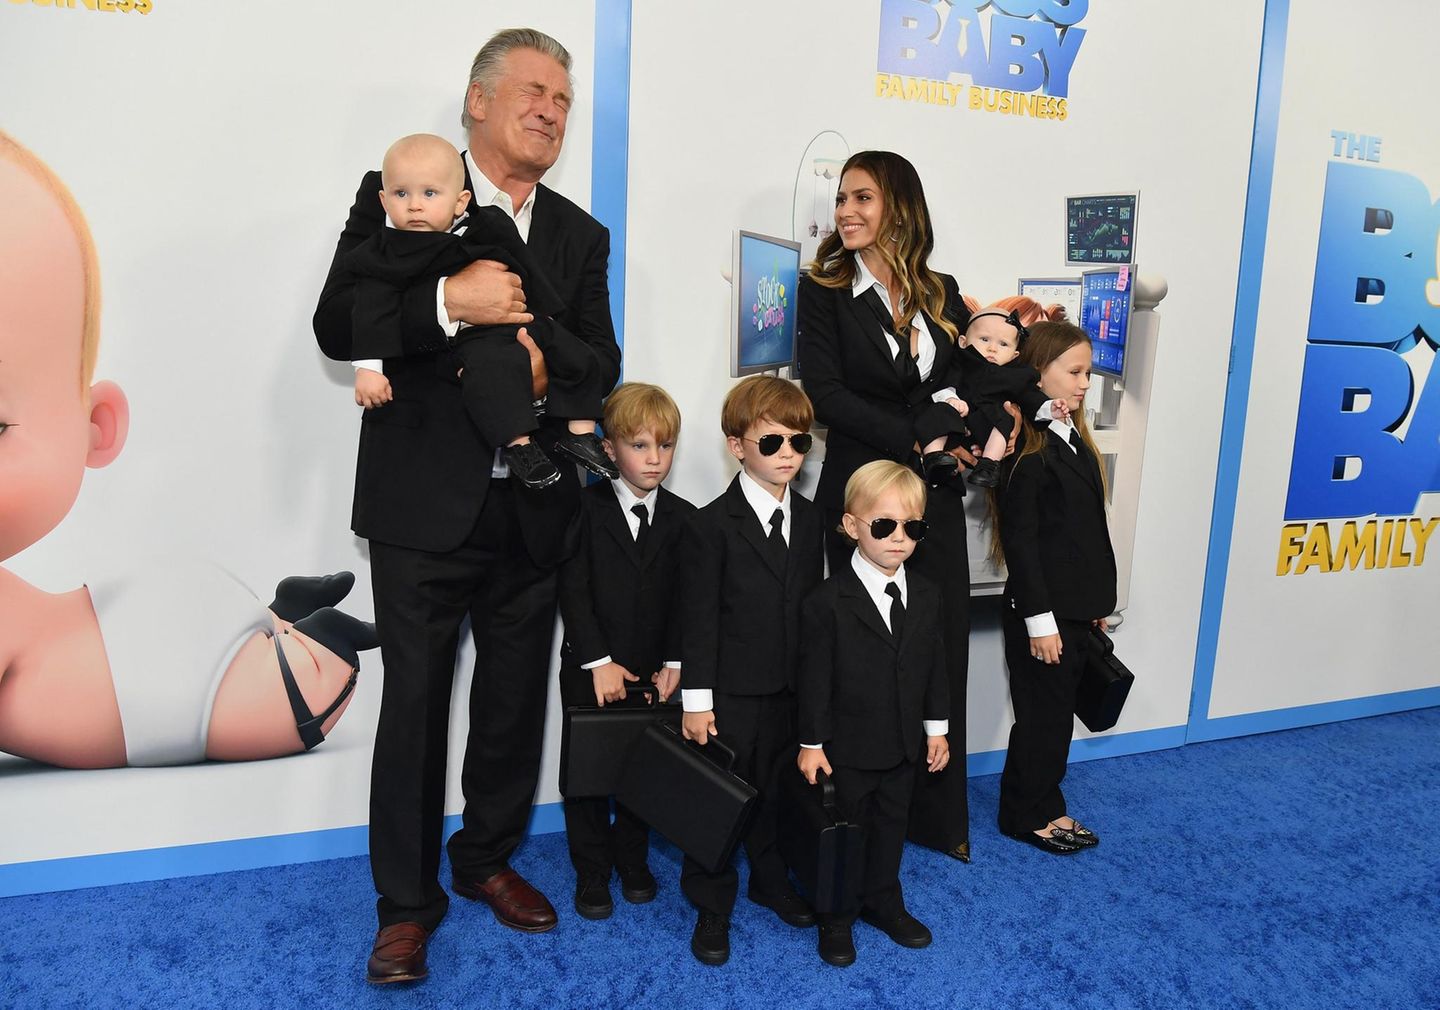 Fashion-Zwillinge: Alec Baldwin posiert mit seiner Familie auf dem roten Teppich.